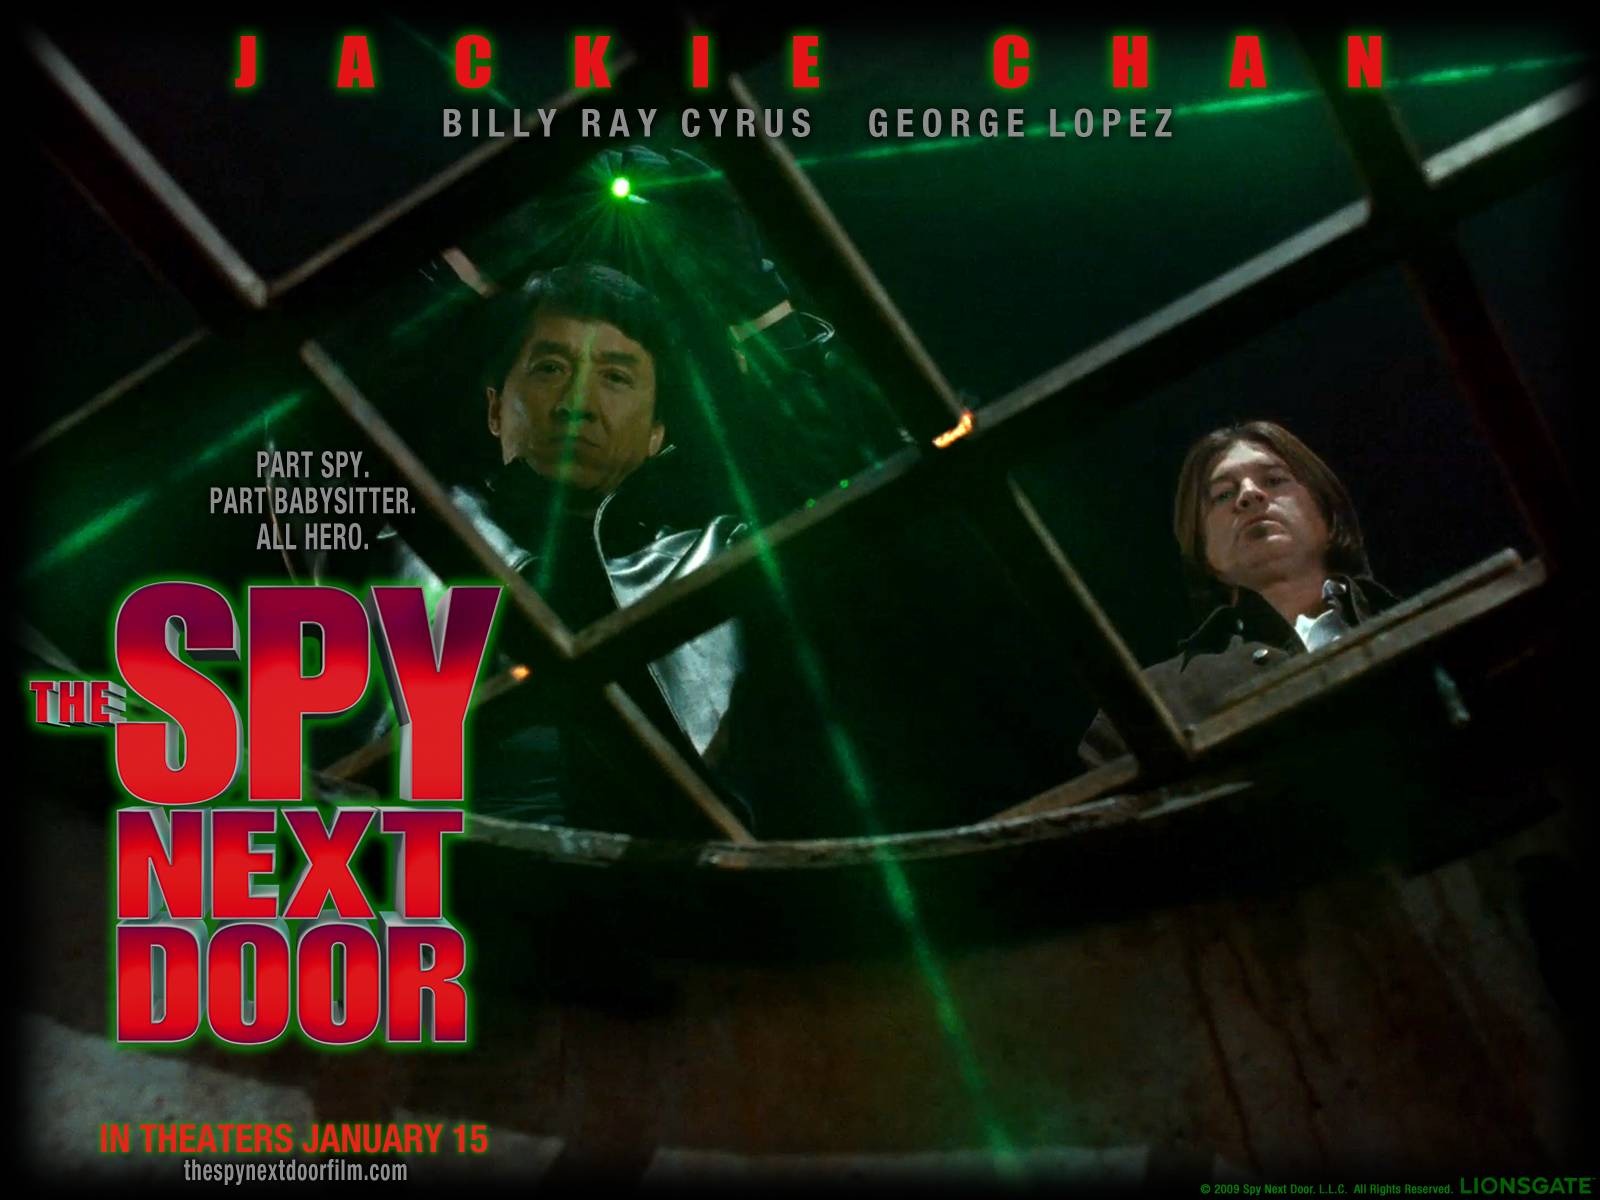 El Spy Next Door HD papel tapiz #14 - 1600x1200